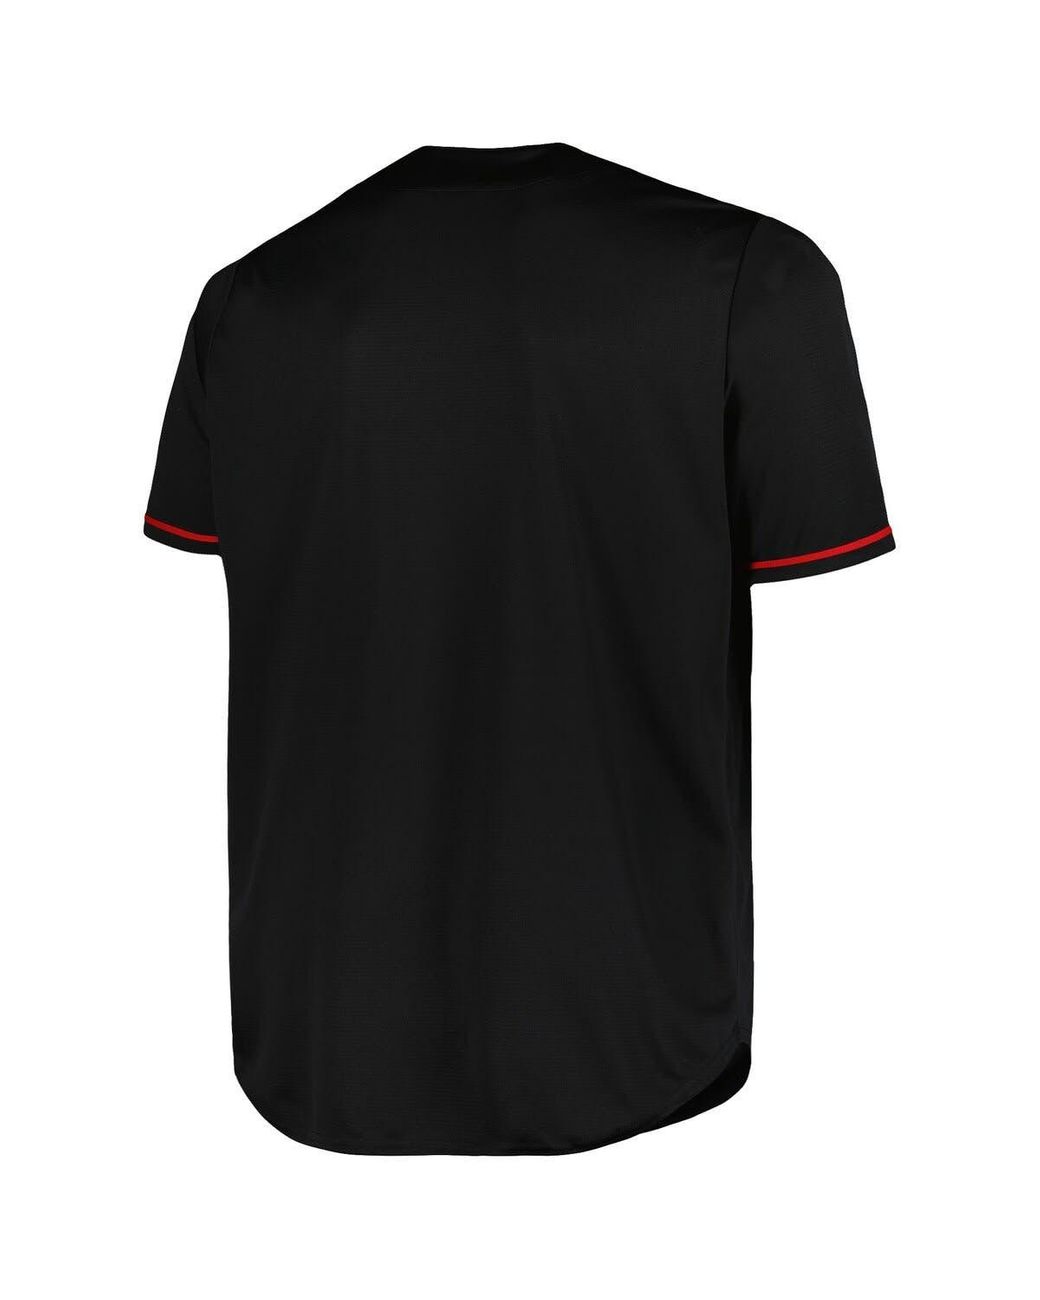 St. Louis Cardinals Big & Tall T-Shirts, Cardinals Tees, Shirts